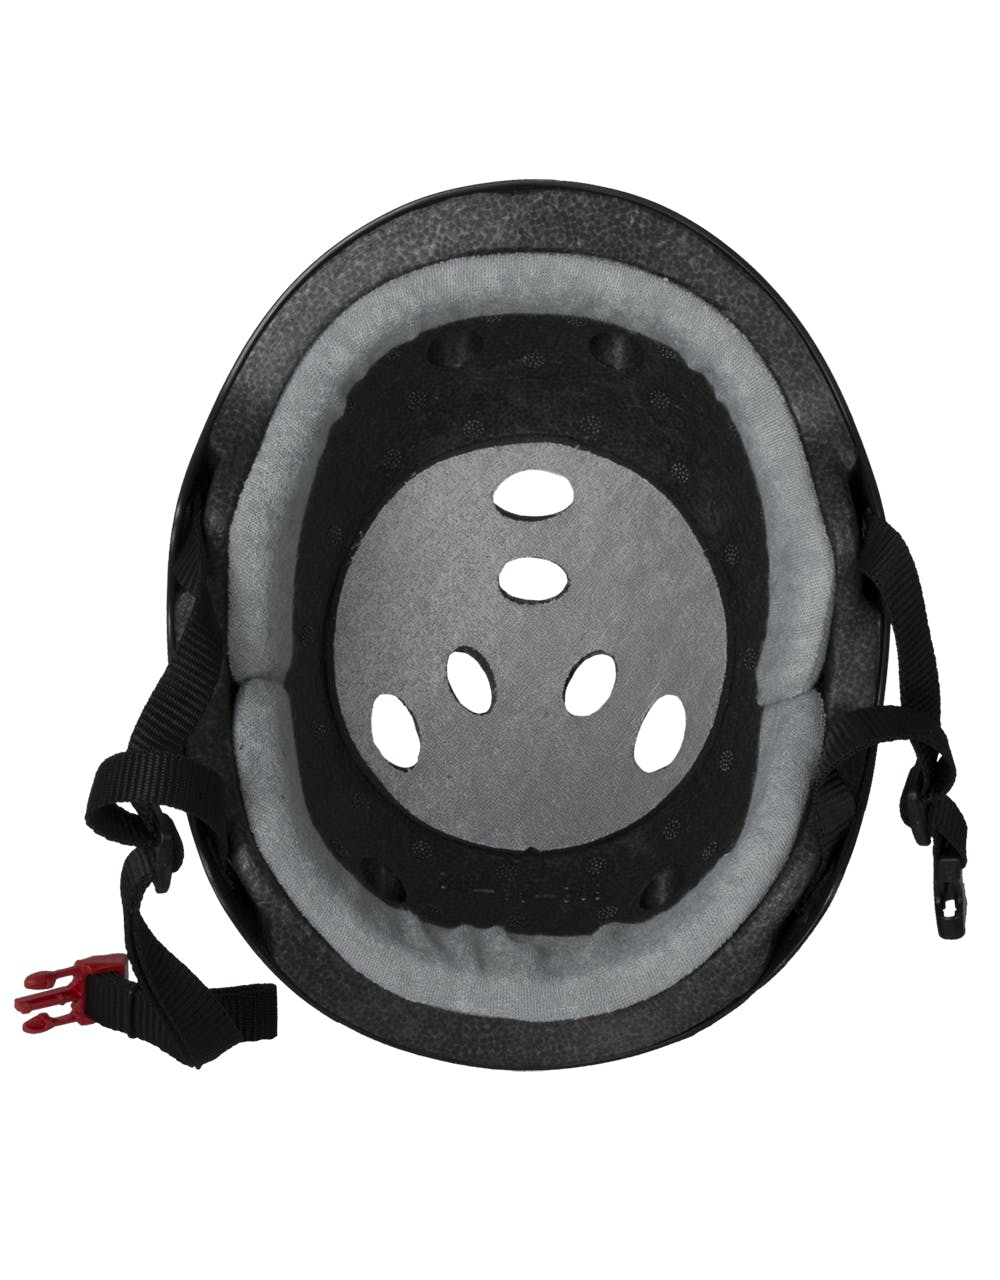 Triple 8 Sweatsaver Certified Rubber Helmet - Black